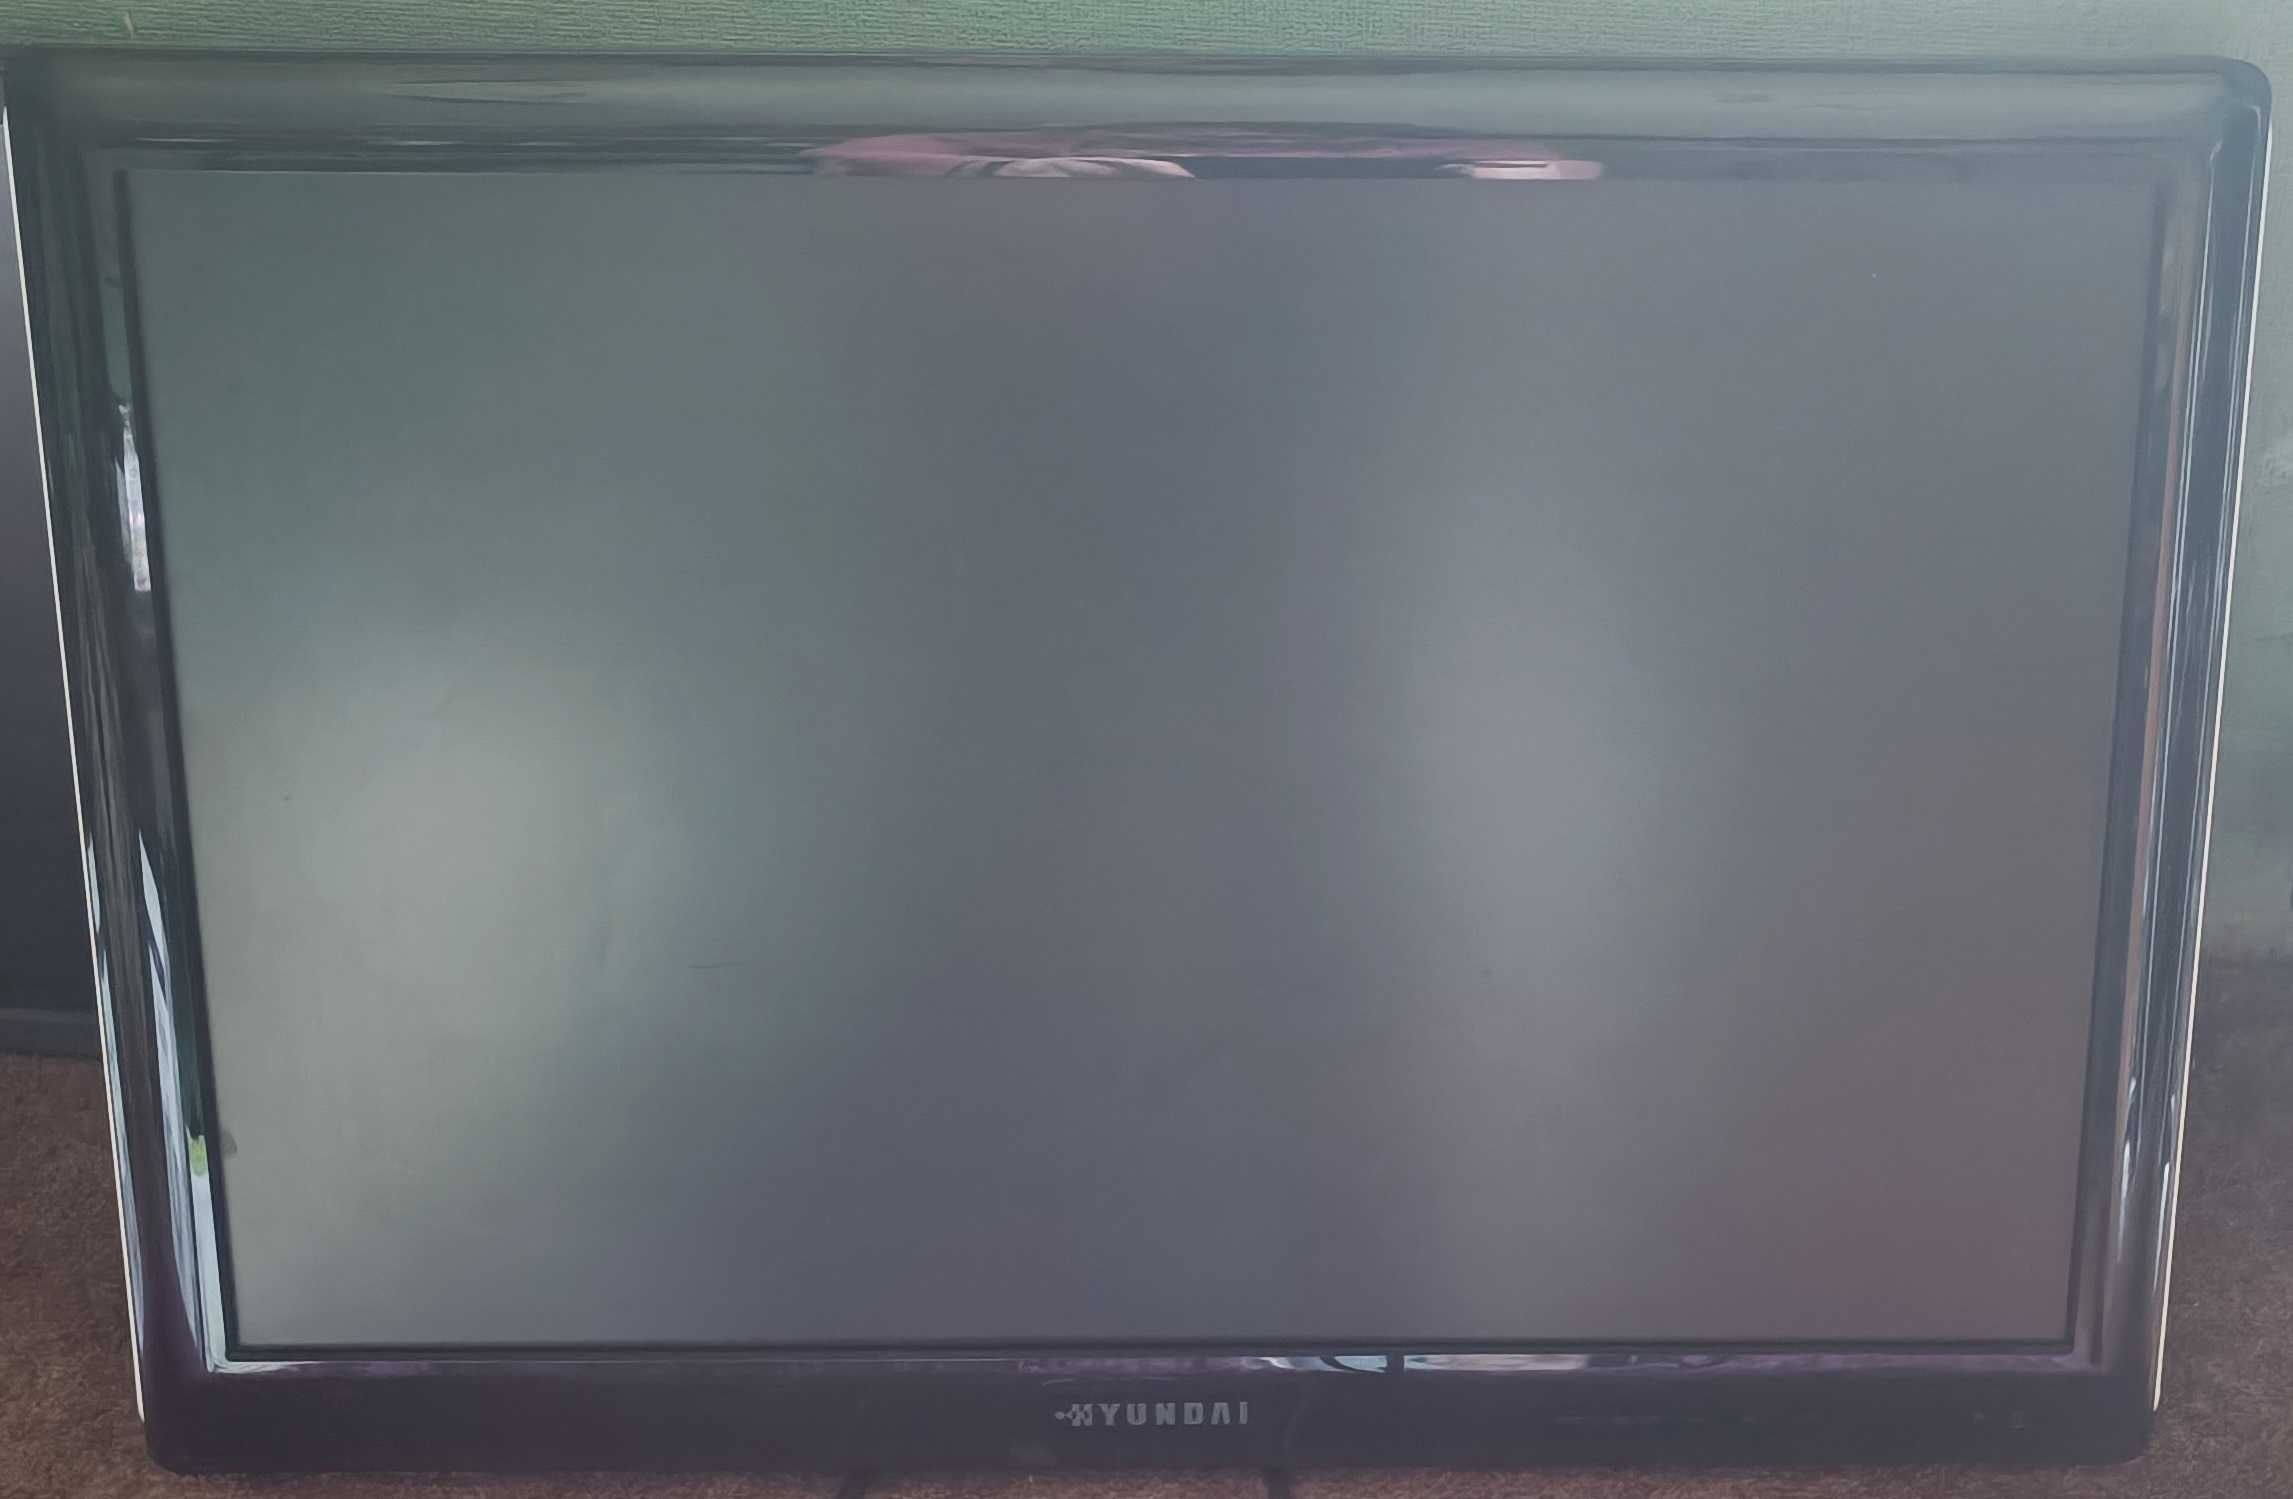 Monitor LCD HUNDAI 24” cale, nie w pełni sprawny